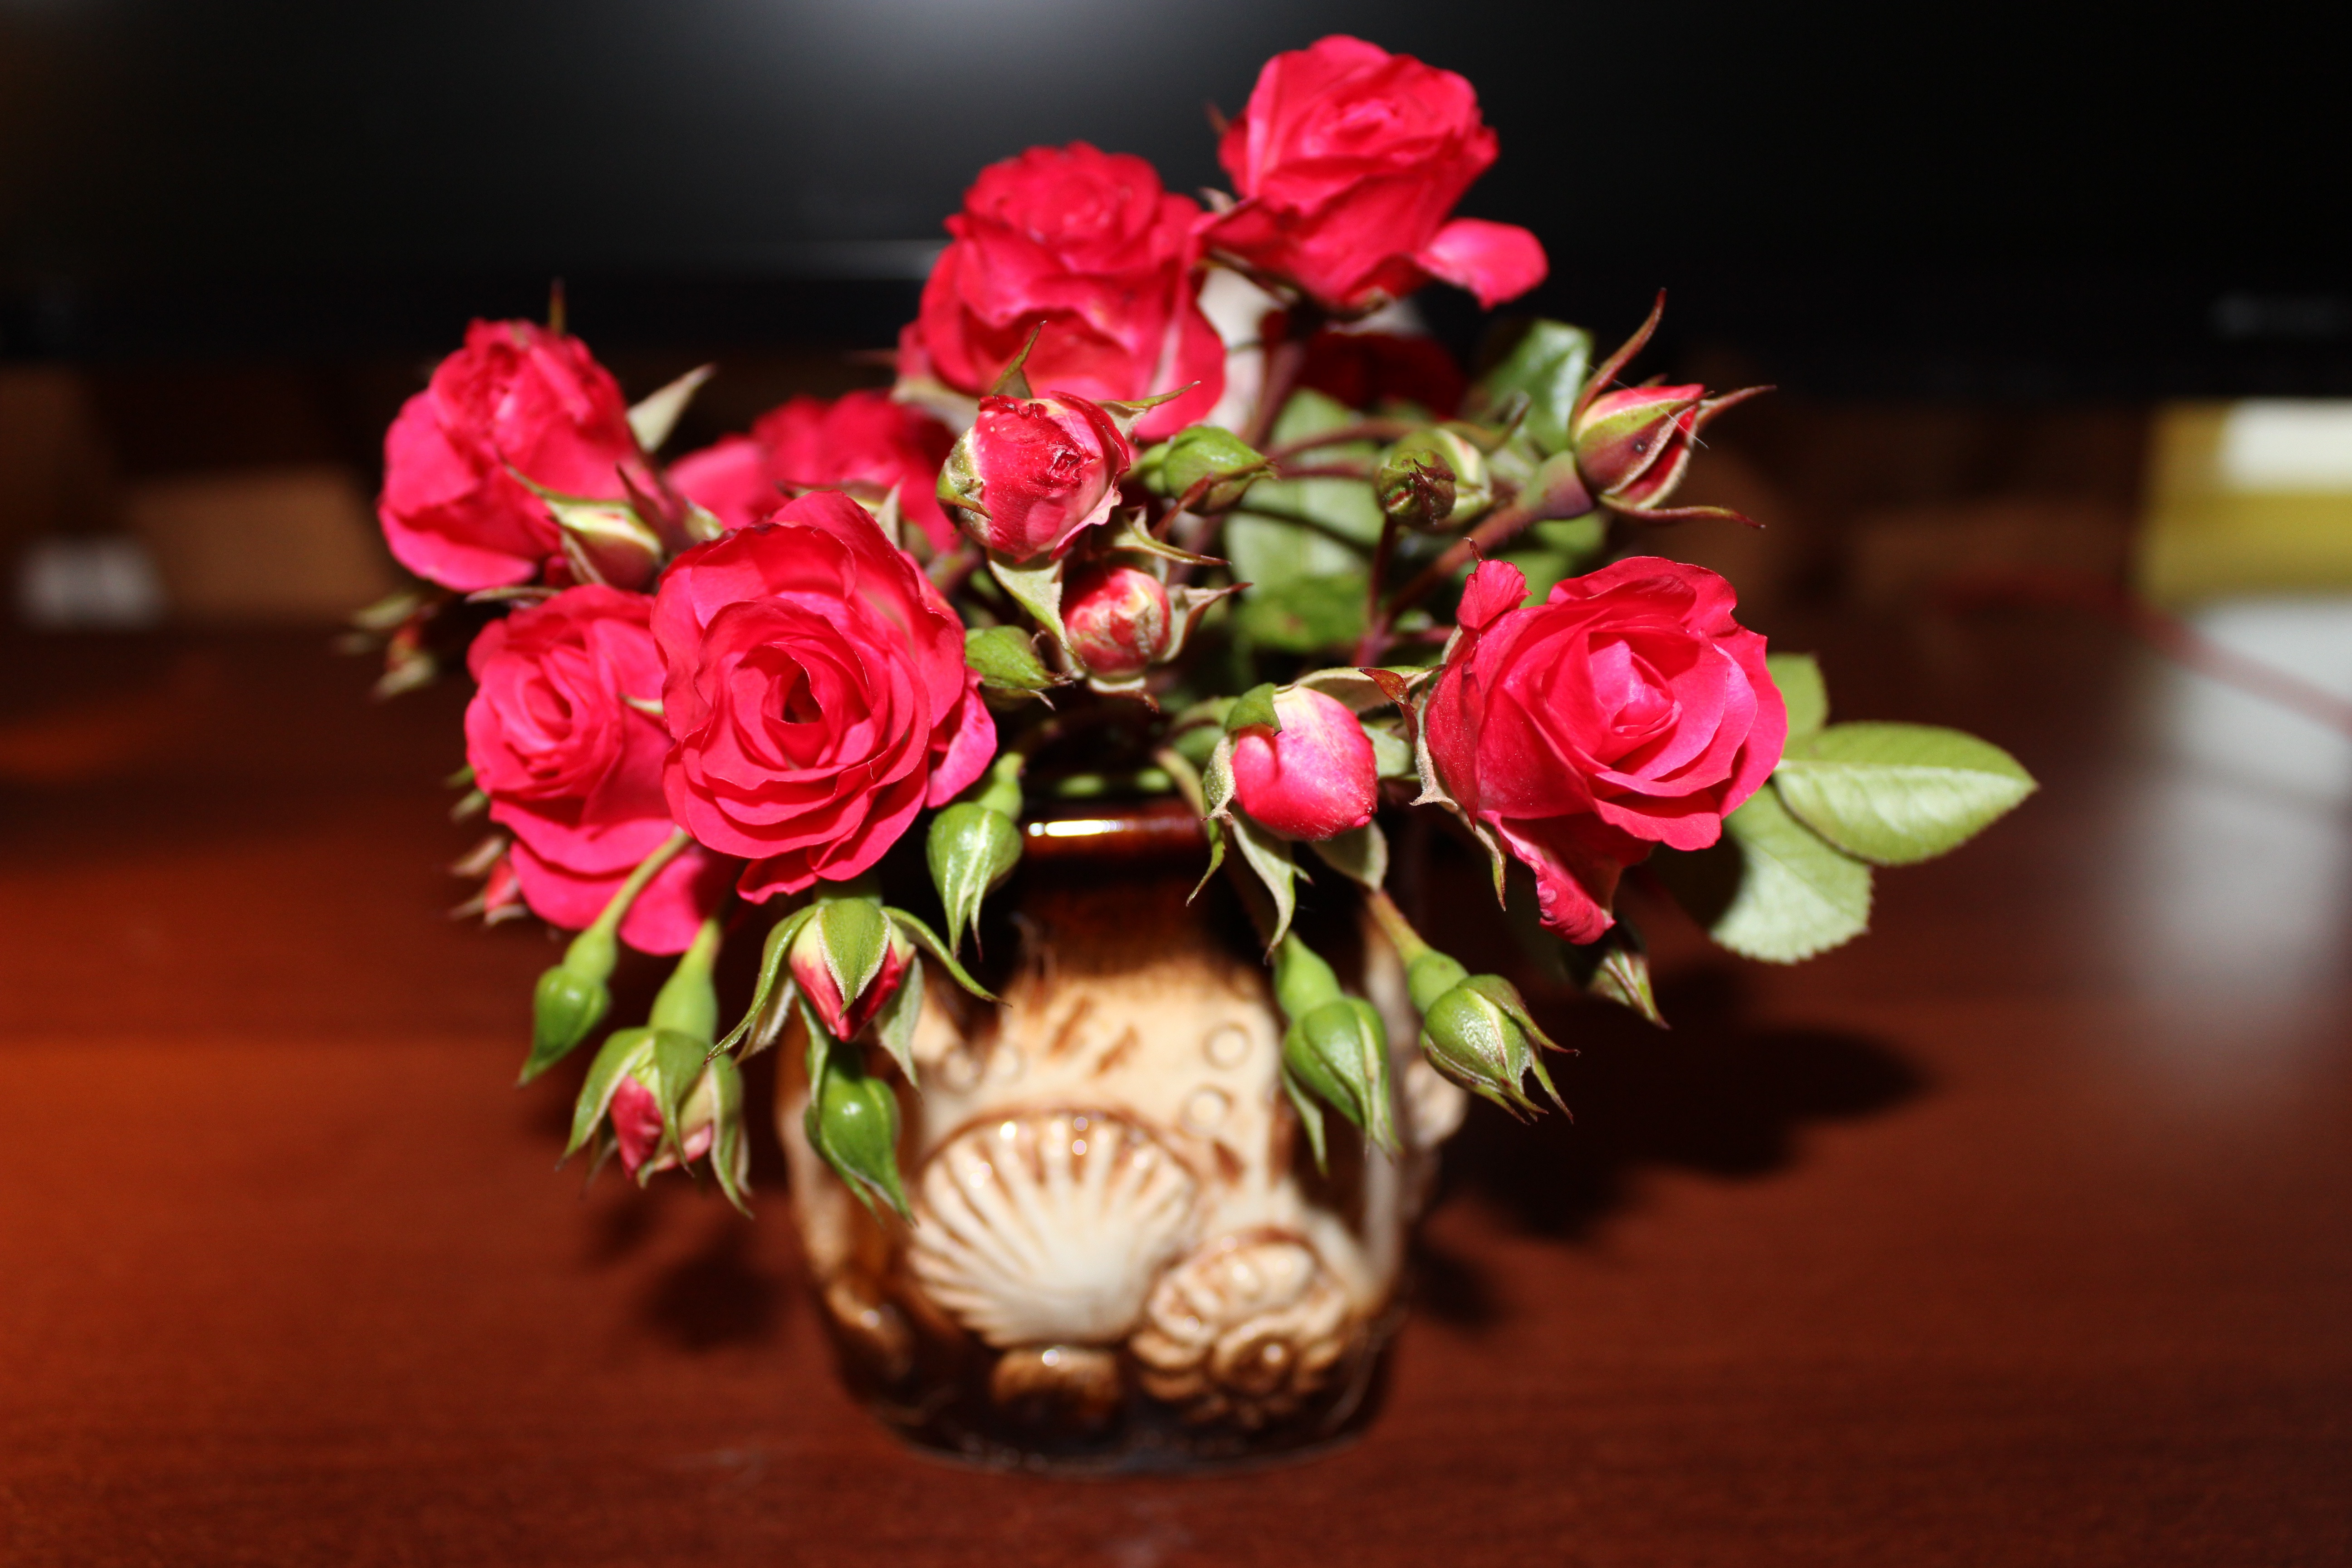 Little red rosebuds